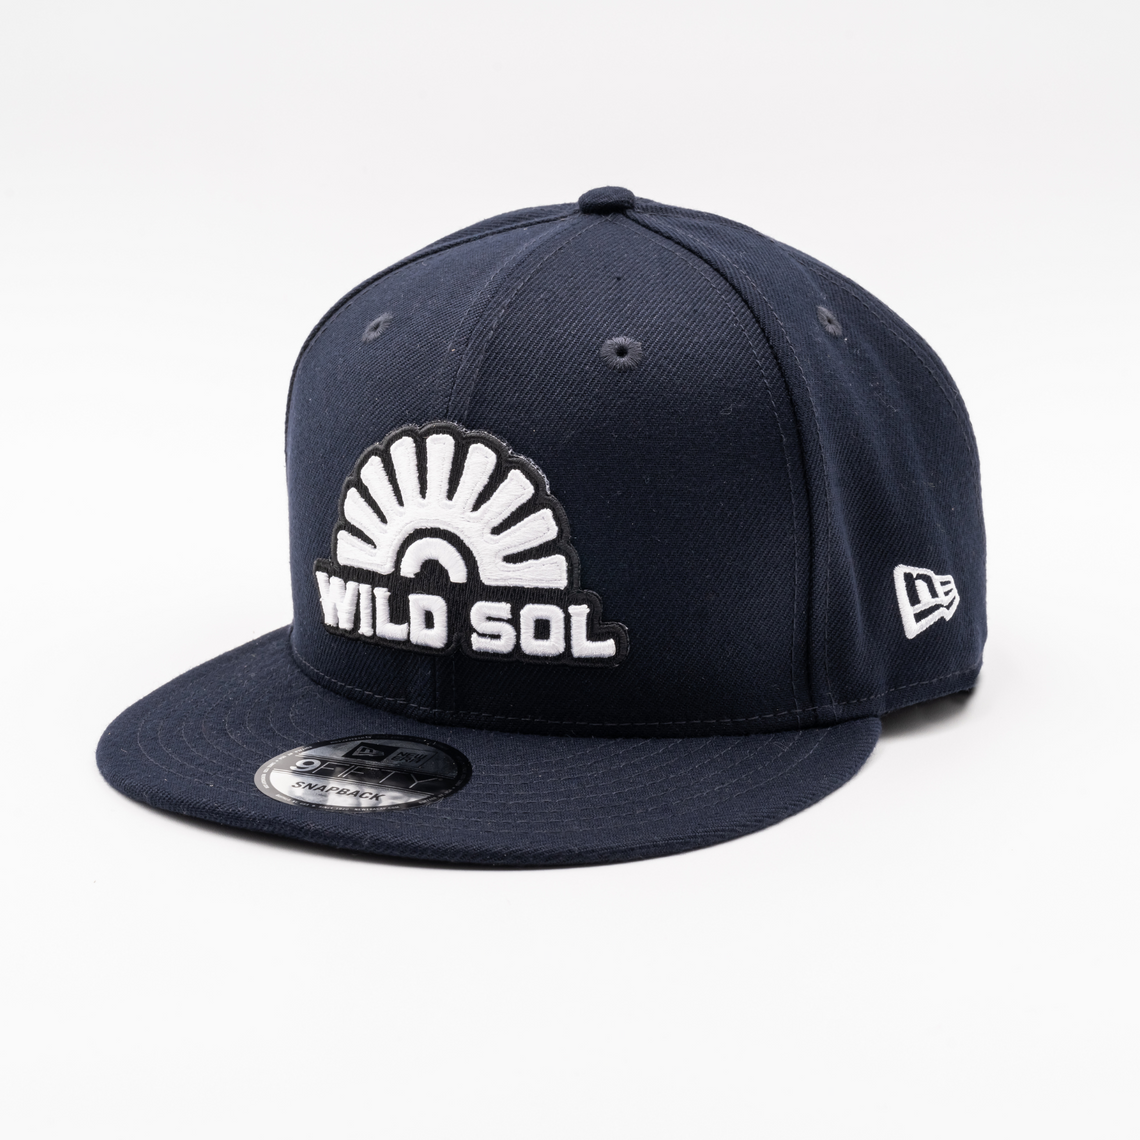 Wild Sol Navy New Era Hat